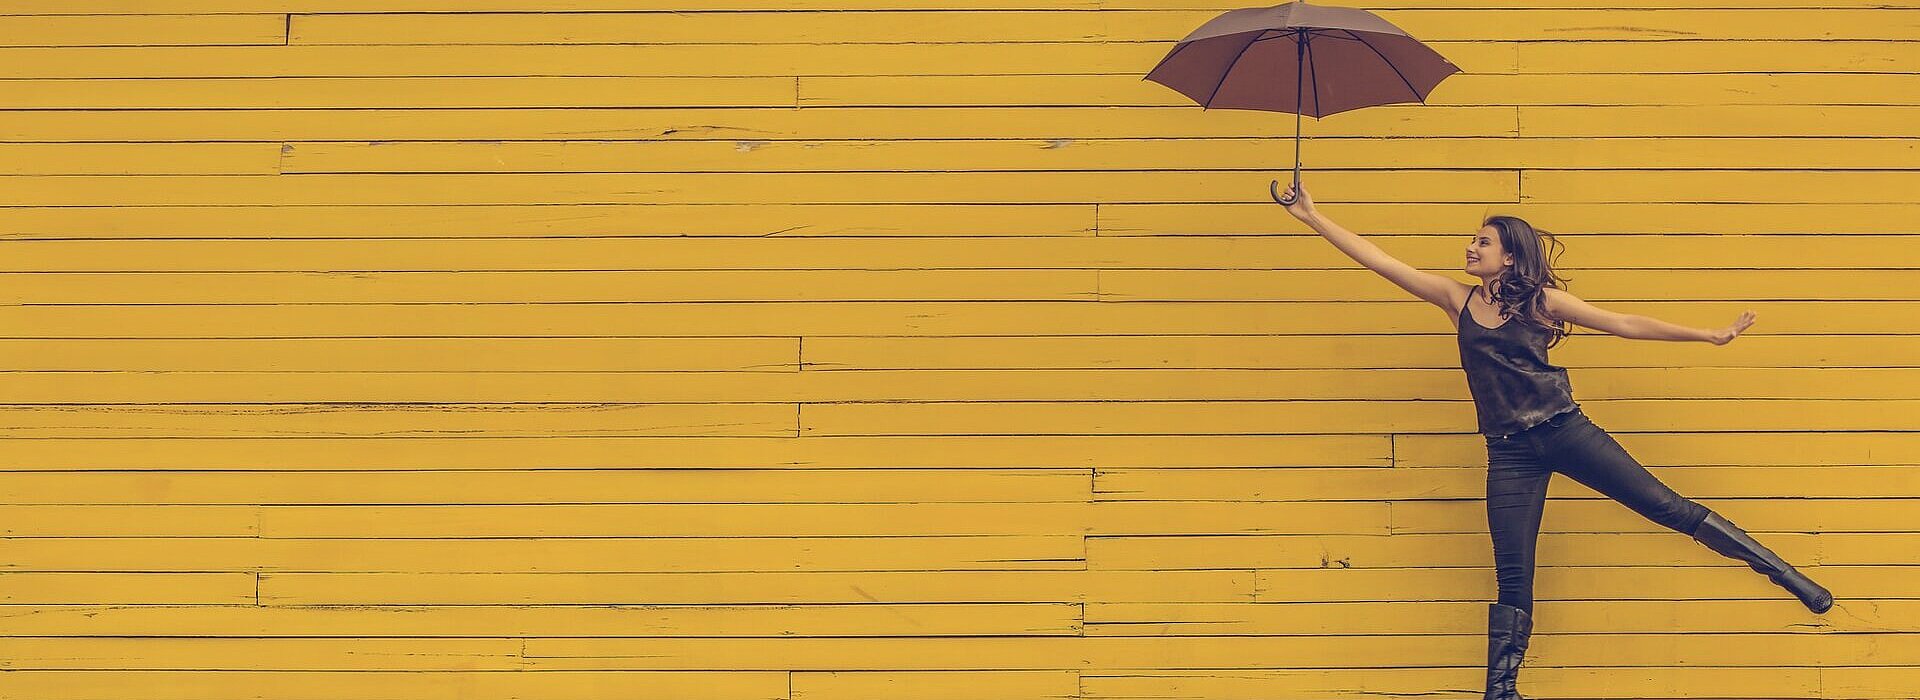 mulher segurando um guarda-chuva e pulando em um fundo de parede amarela